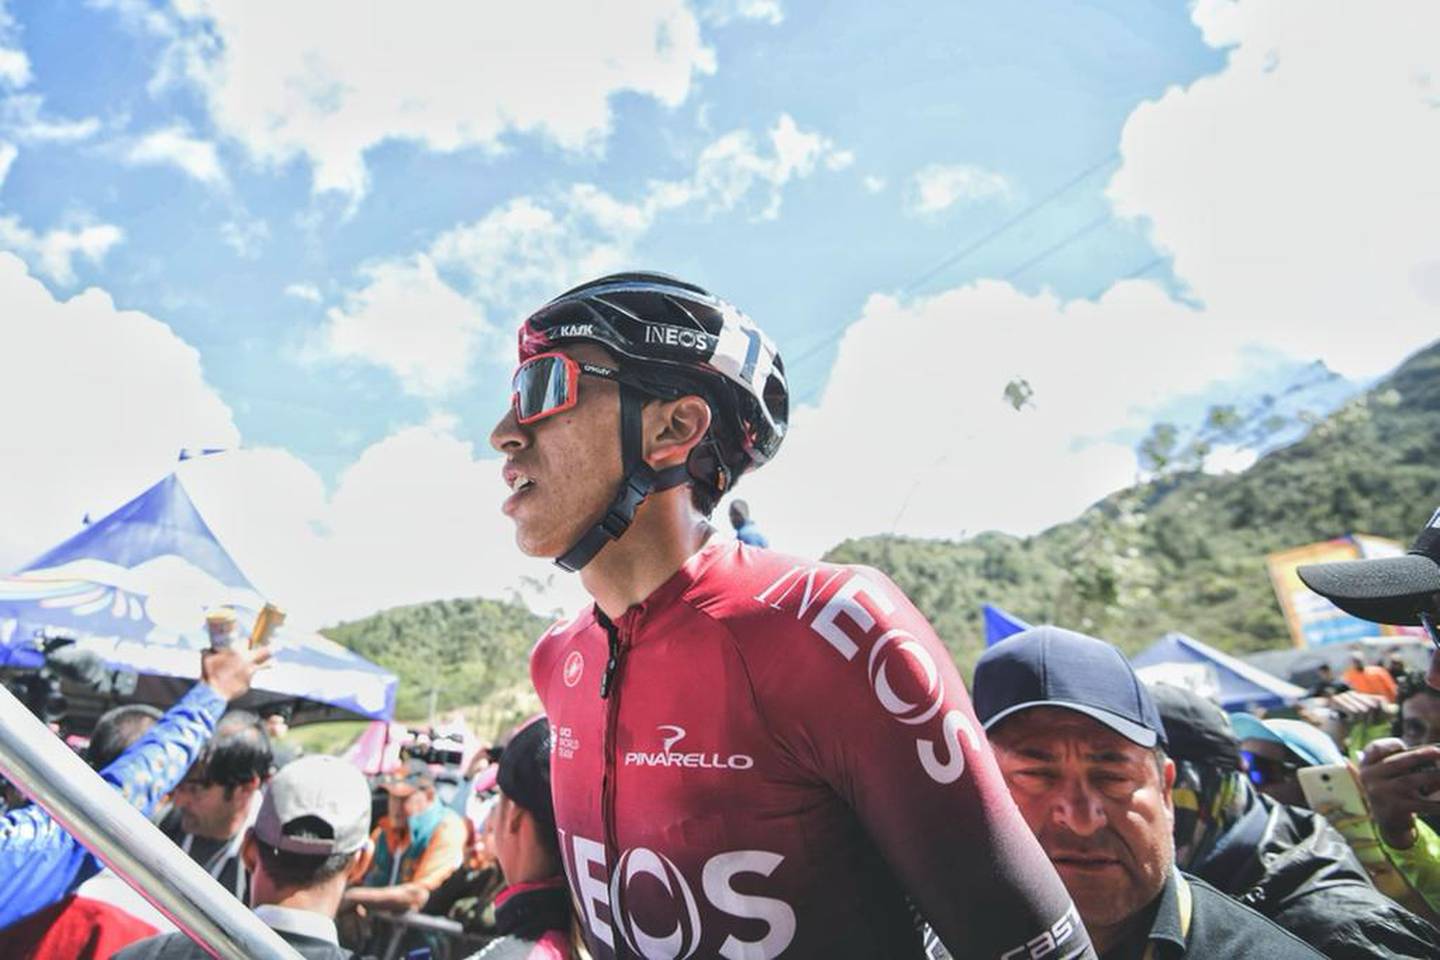 El ciclista colombiano expresó su inconformidad con Ramo y su publicidad Egansito al señalar que dicho homenaje no contó con su autorización o la de su equipo.